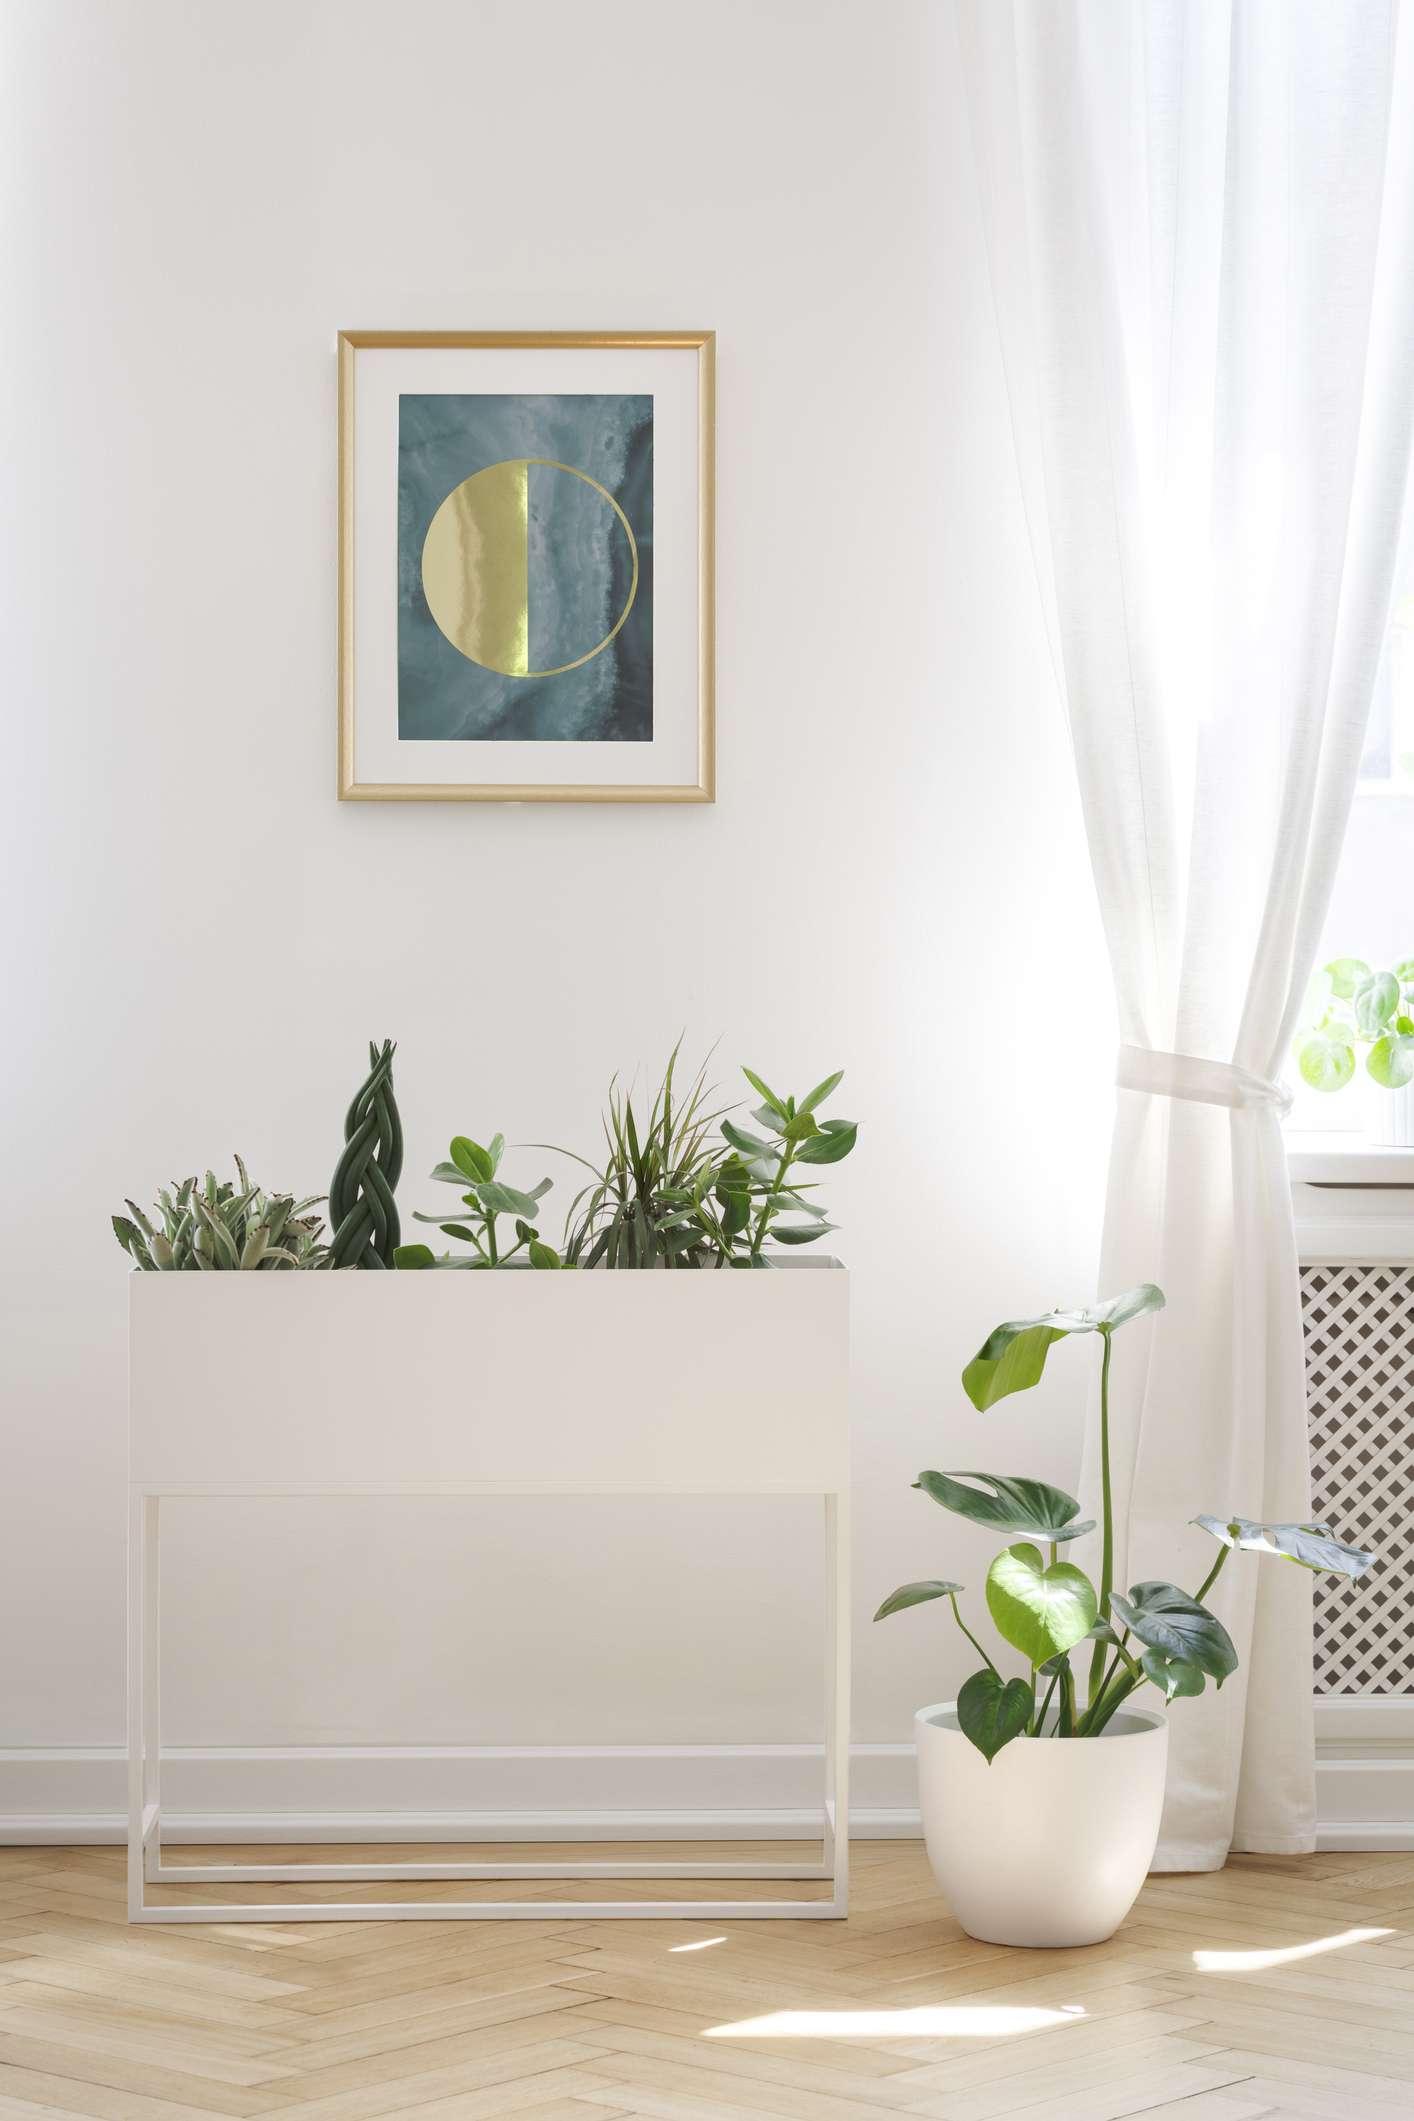 Pôster na parede branca acima das plantas no interior da sala de estar com cortinas na janela.